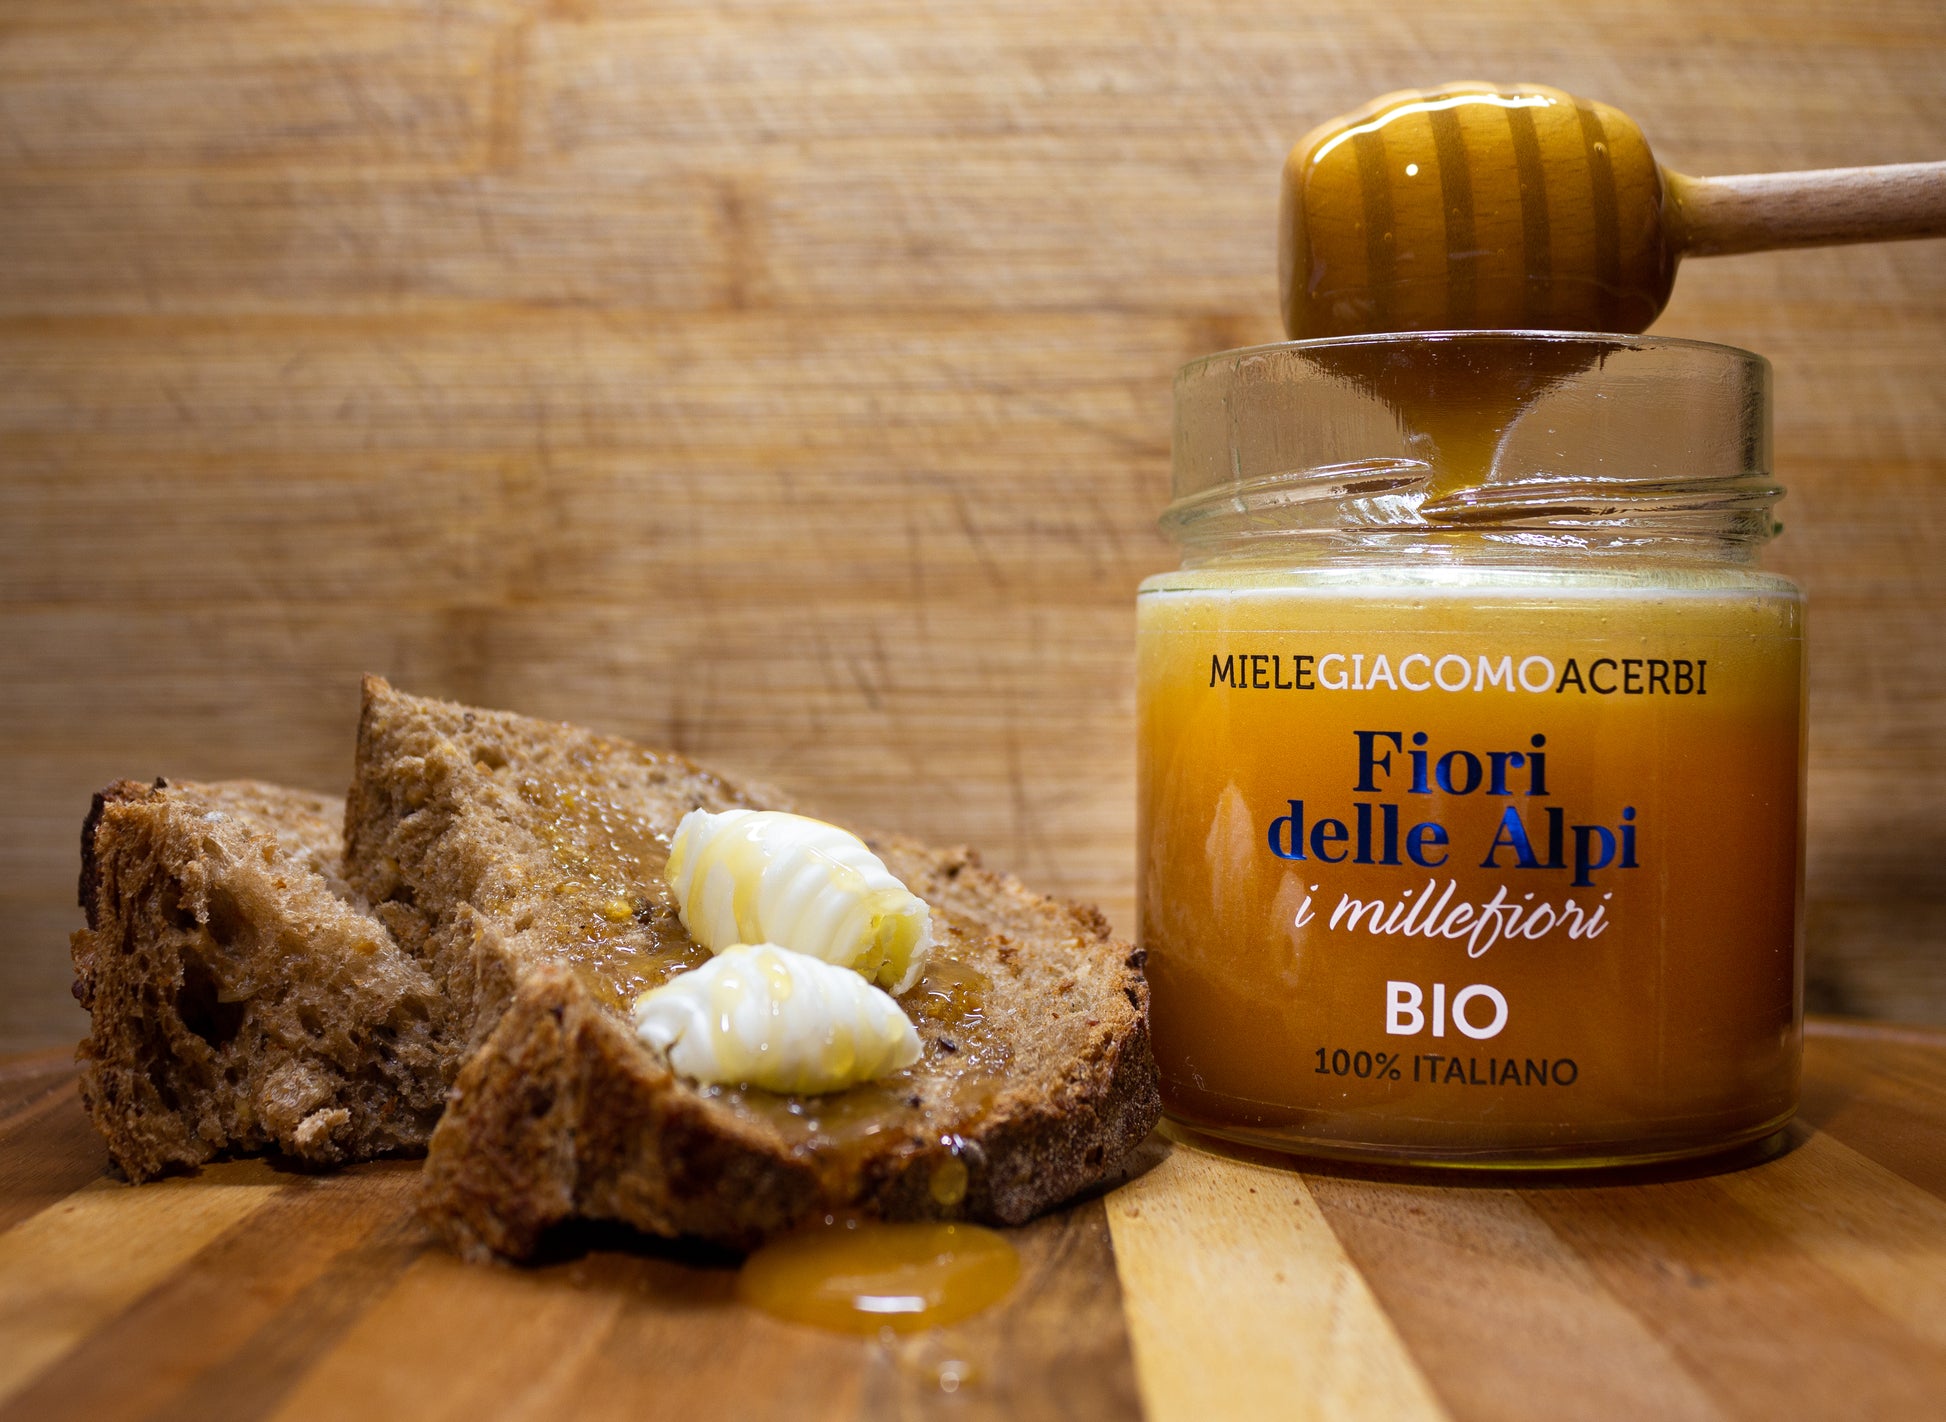 Miele millefiori Fiori delle Alpi con ambientazione in legno, abbinato con pane integrale e noci di burro